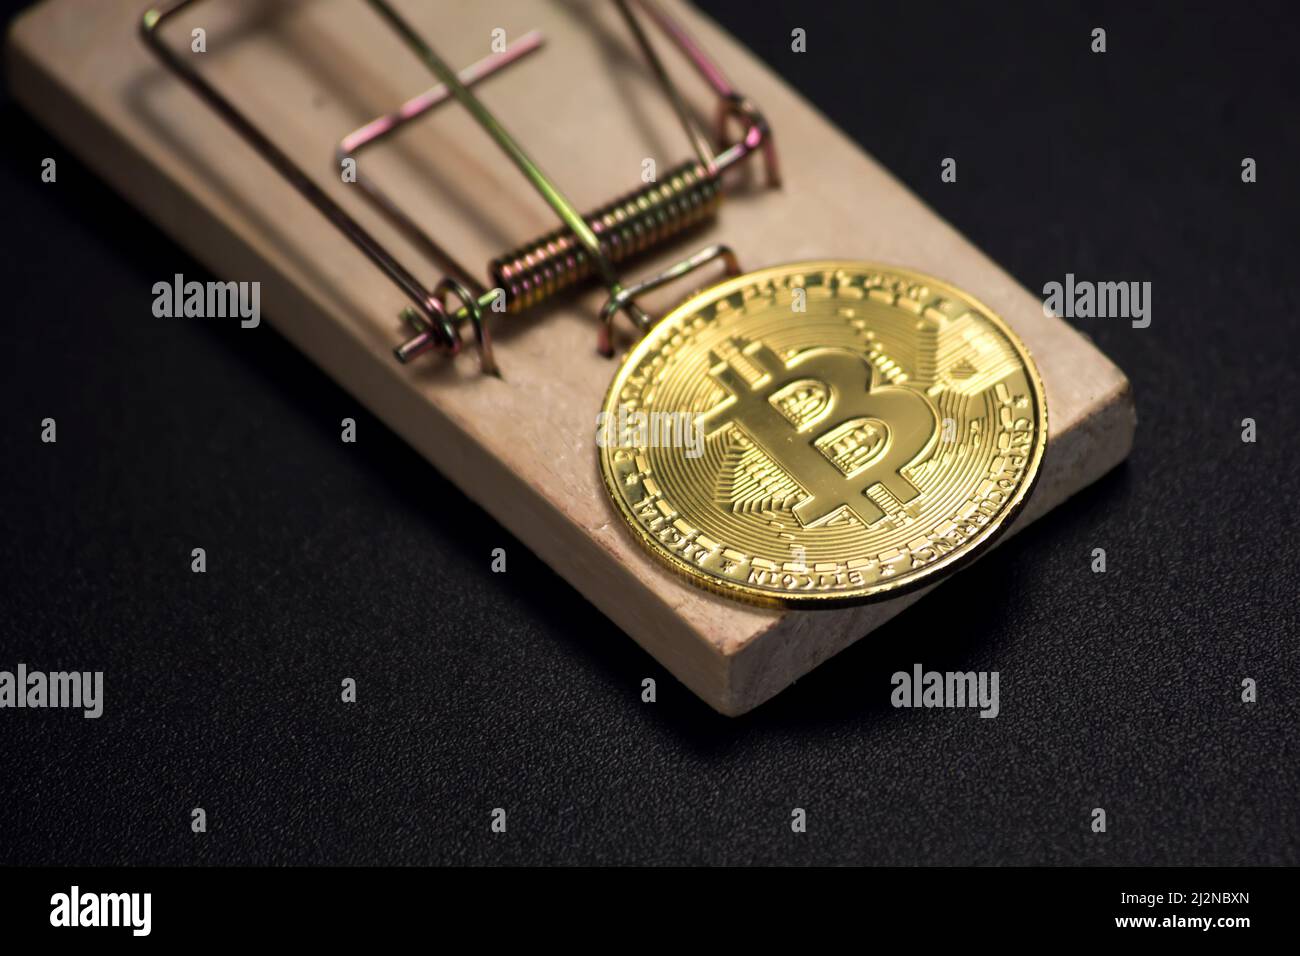 Moneda de Bitcoin en una mousetrap. Riesgos y peligros de invertir en criptomoneda Foto de stock